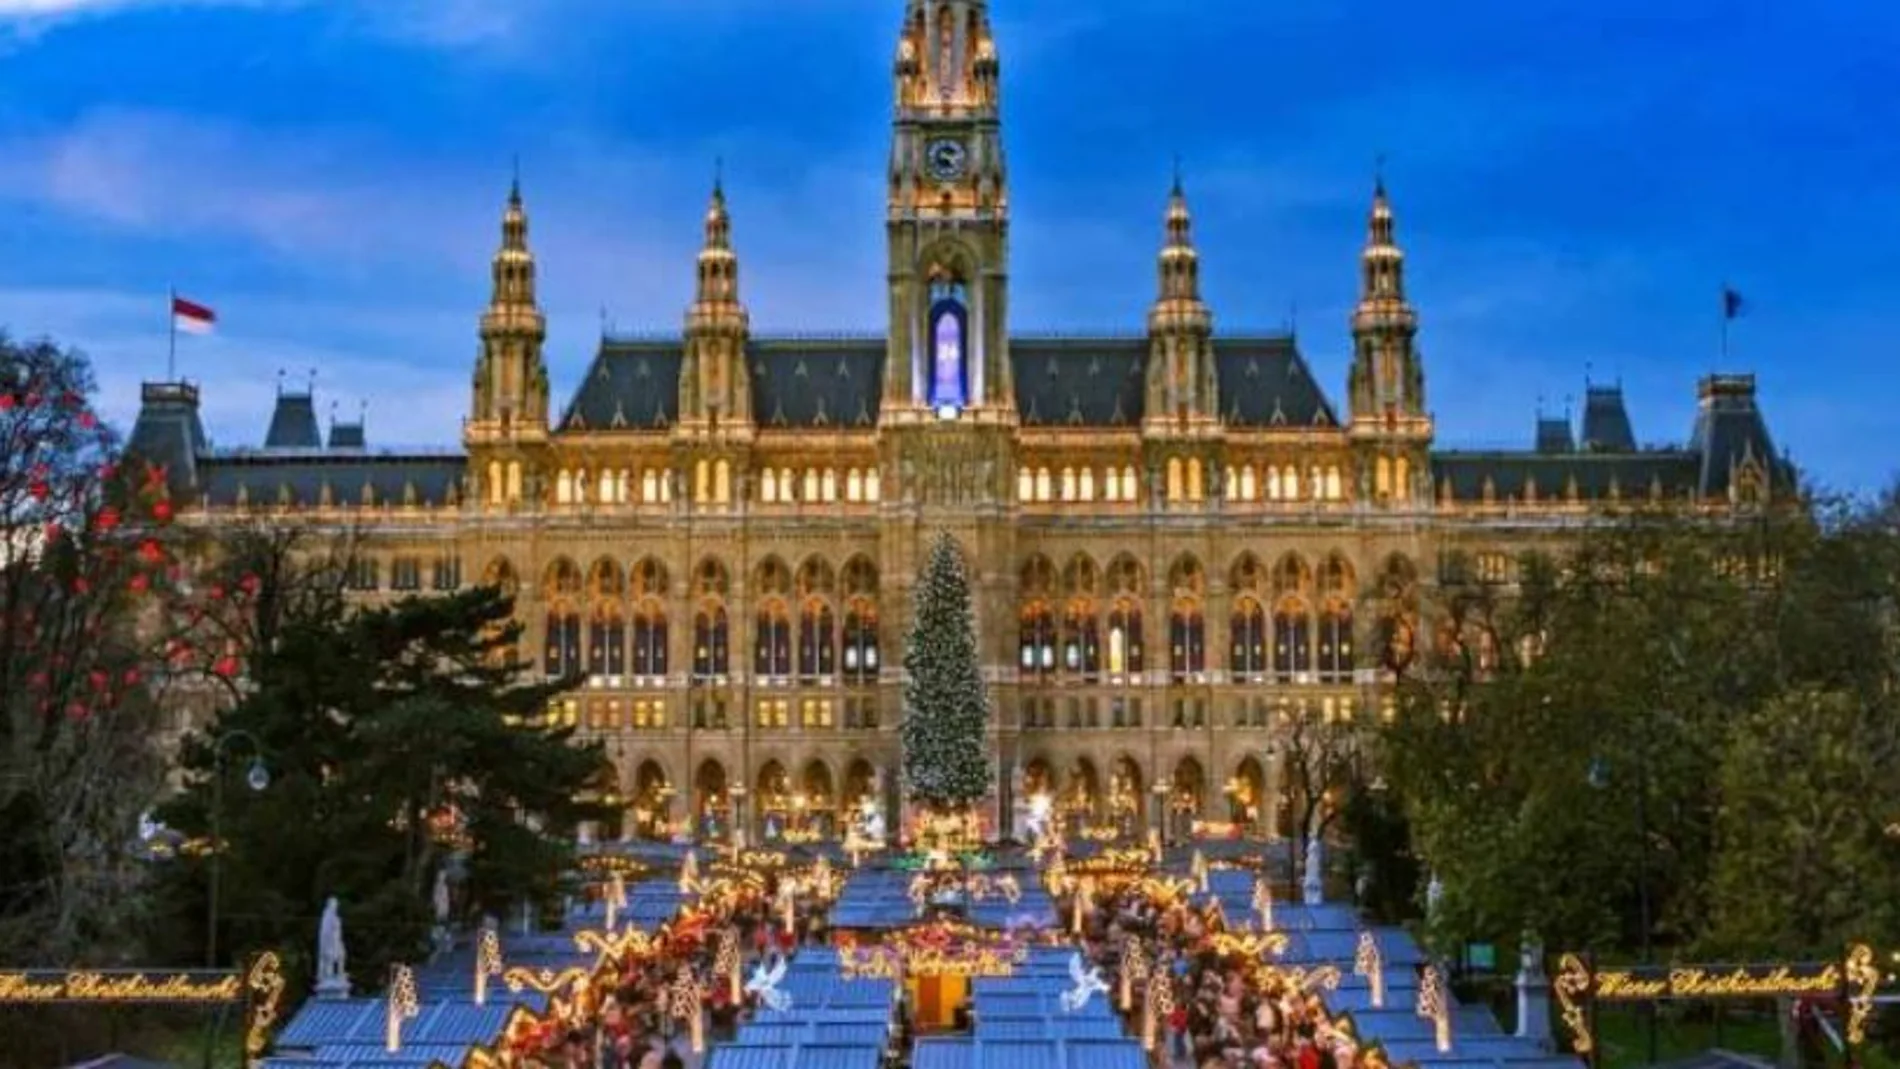 Las ciudades europeas visten sus mercados navideños de luces y color